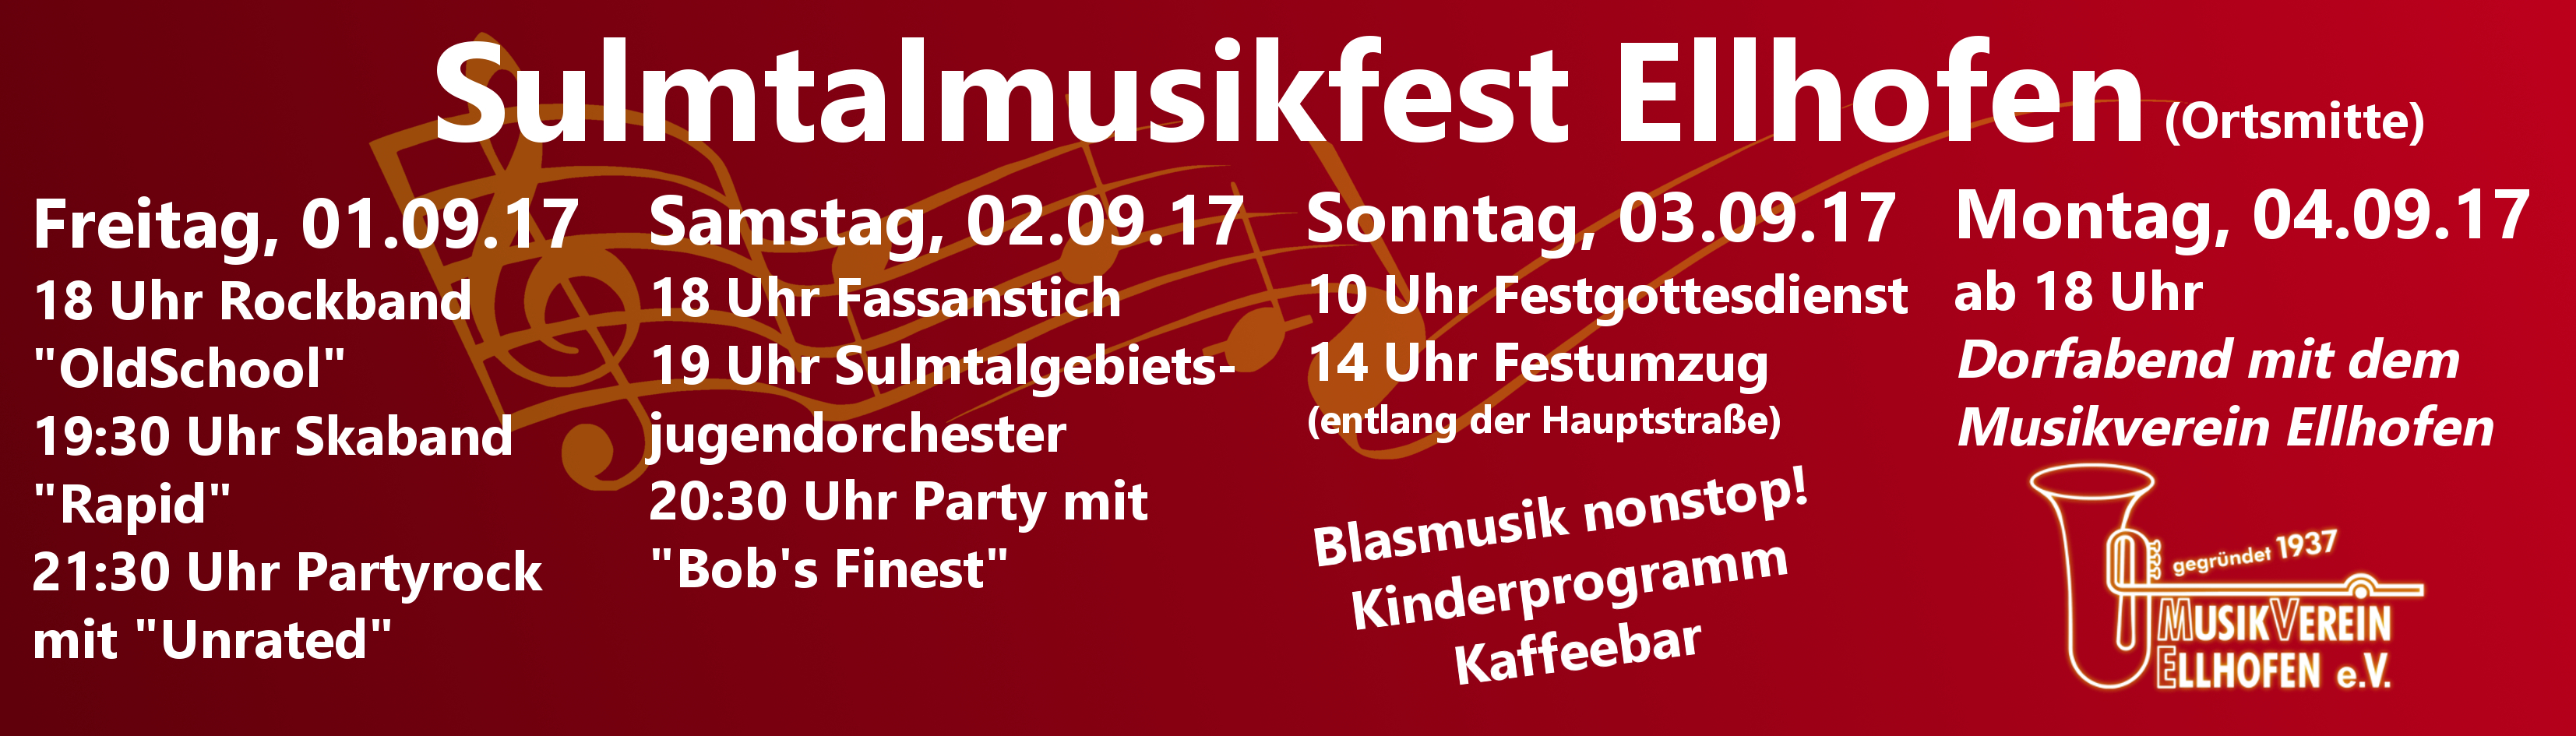 Programm vom Sulmtalmusikfest 2017 in Ellhofen im Jubiläumsjahr